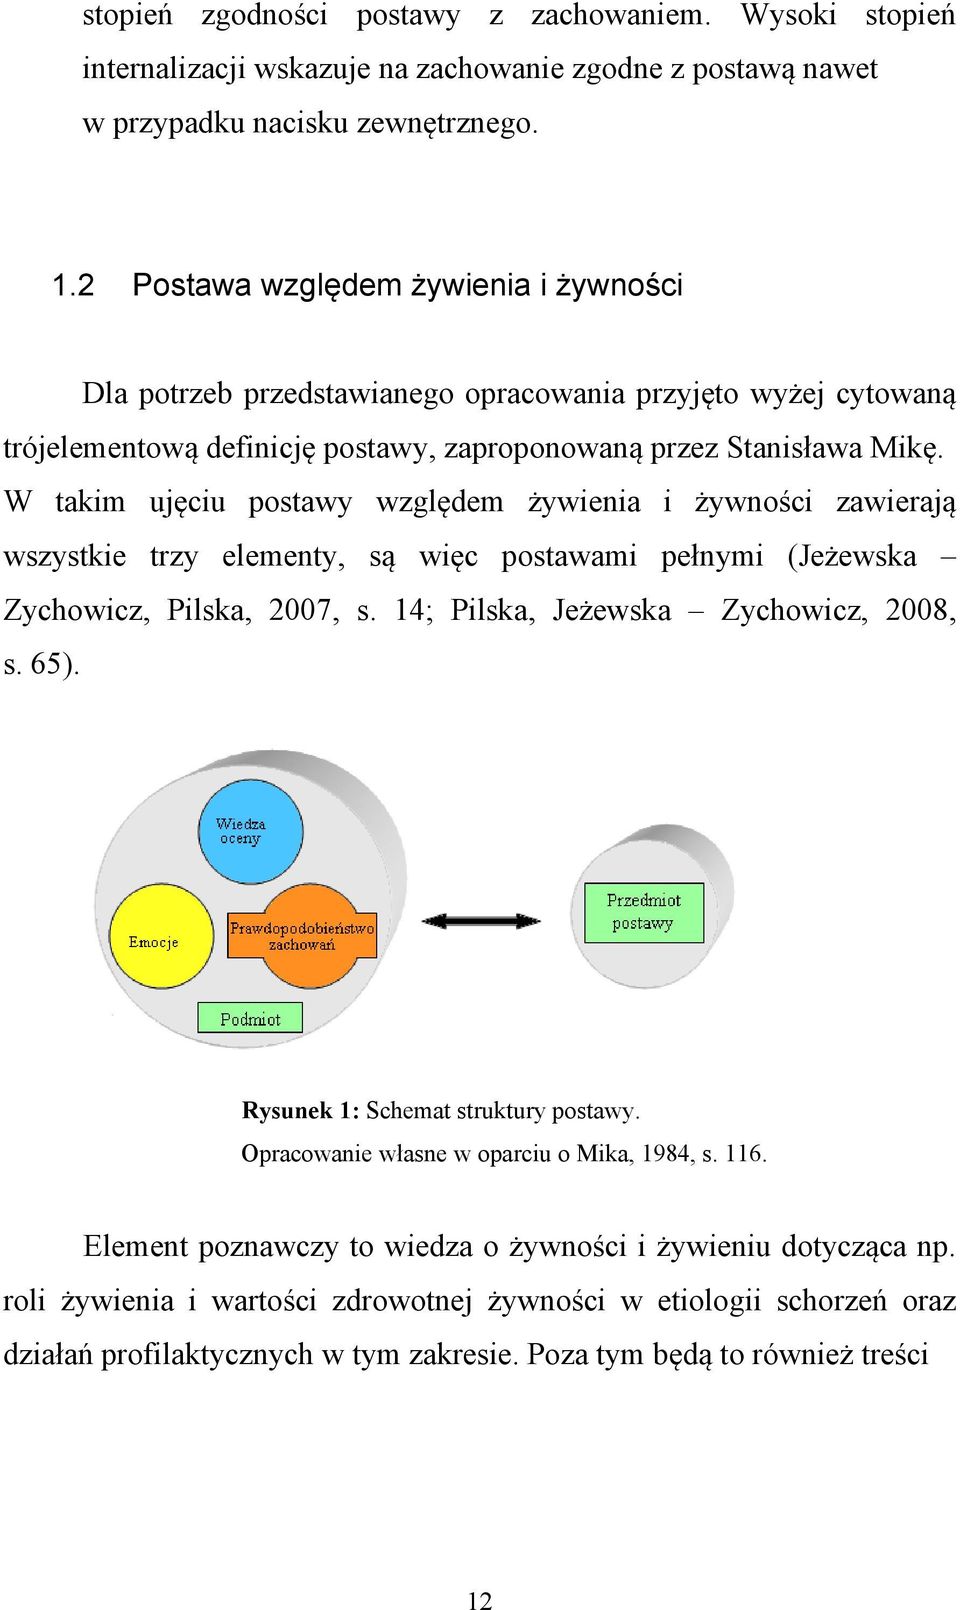 W takim ujęciu postawy względem żywienia i żywności zawierają wszystkie trzy elementy, są więc postawami pełnymi (Jeżewska Zychowicz, Pilska, 2007, s. 14; Pilska, Jeżewska Zychowicz, 2008, s. 65).